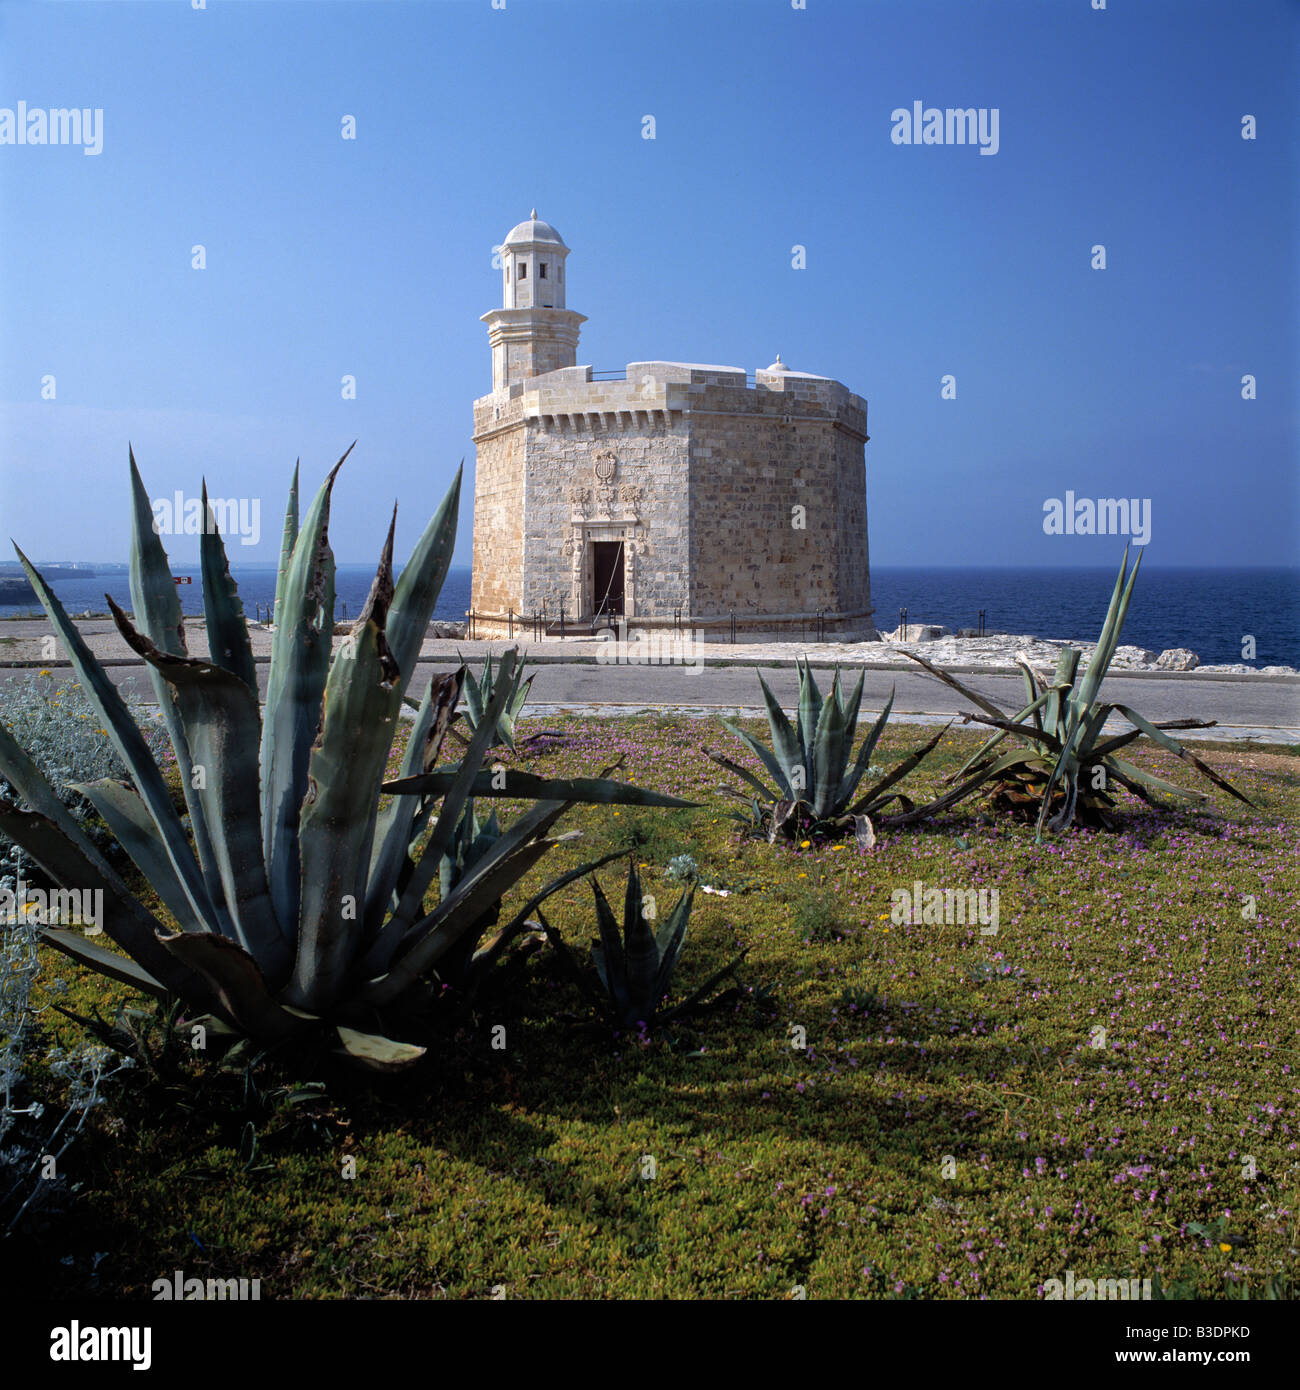 Soy Meeresufer Kastell Sant Nicolau, kleine Festung, exotische Gewaechse, Ciutadela, Menorca, Balearen Foto de stock